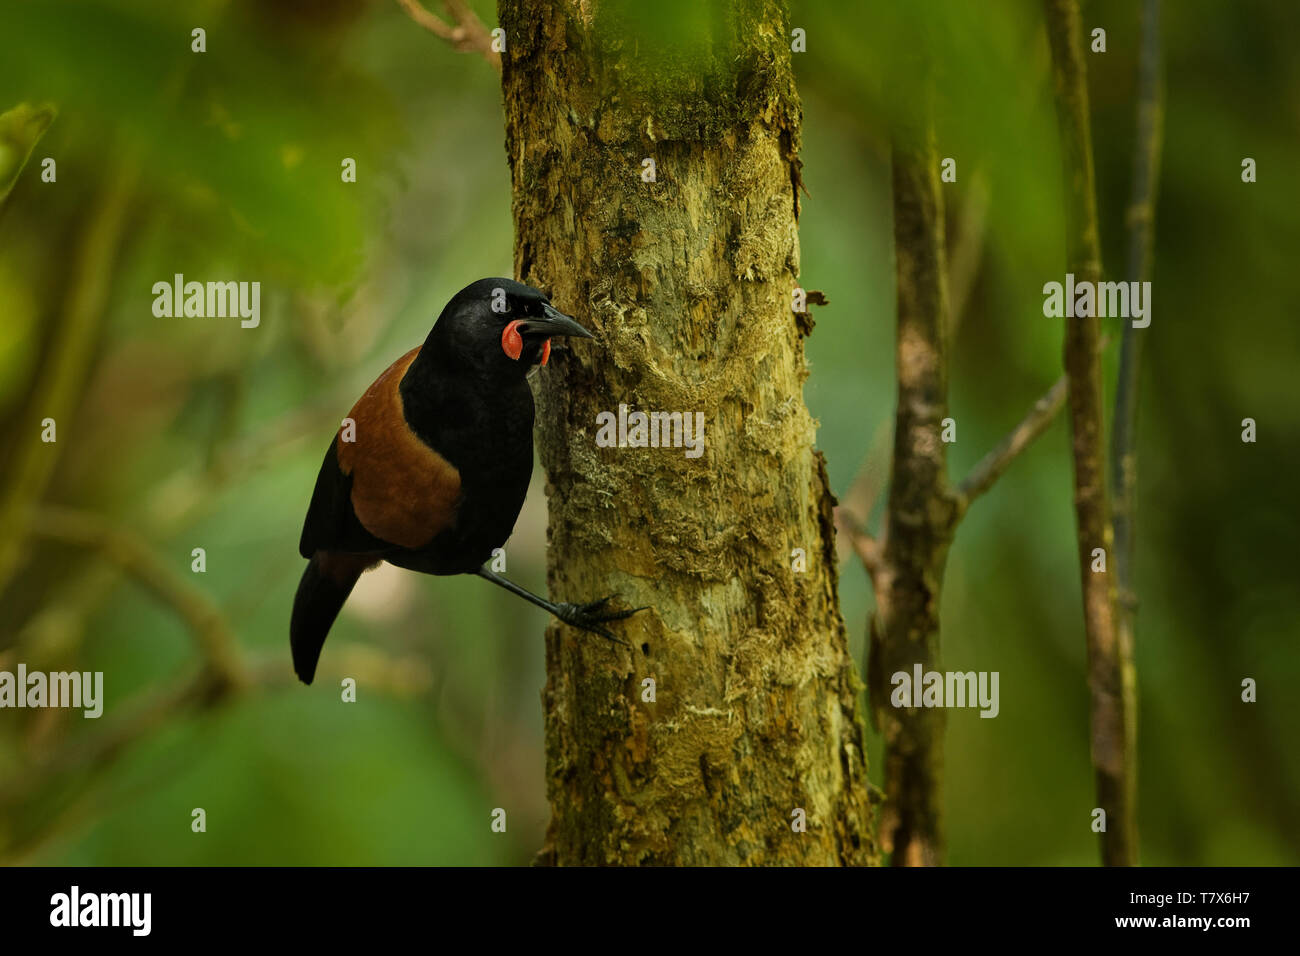 Il canto di Isola del nord a doppio spiovente - Philesturnus rufusater - tieke uccello endemico in Nuova Zelanda Foresta. Foto Stock